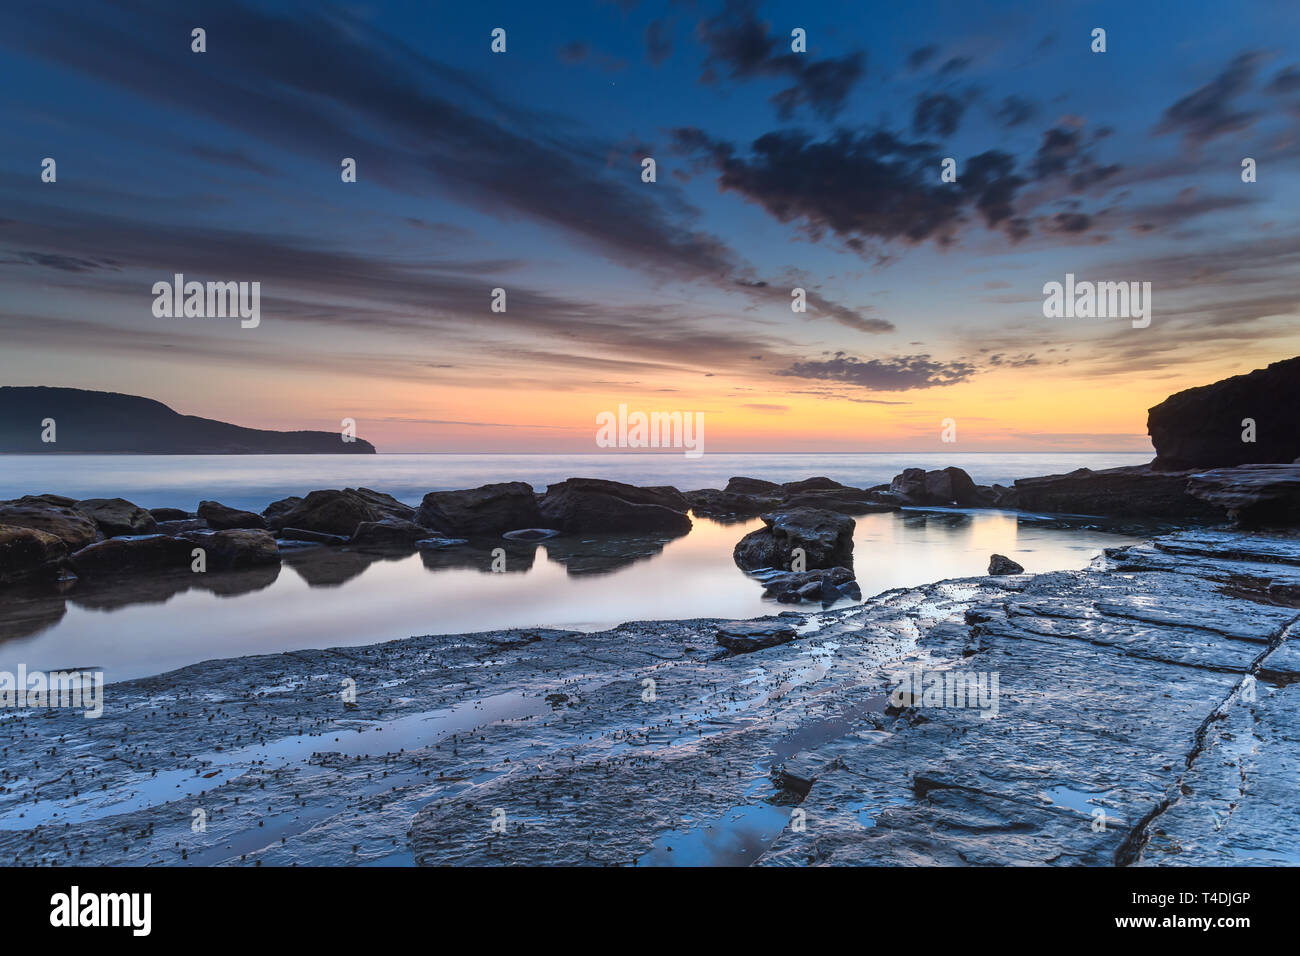 Catturare l'alba da Killcare Beach sulla costa centrale, NSW, Australia. Foto Stock